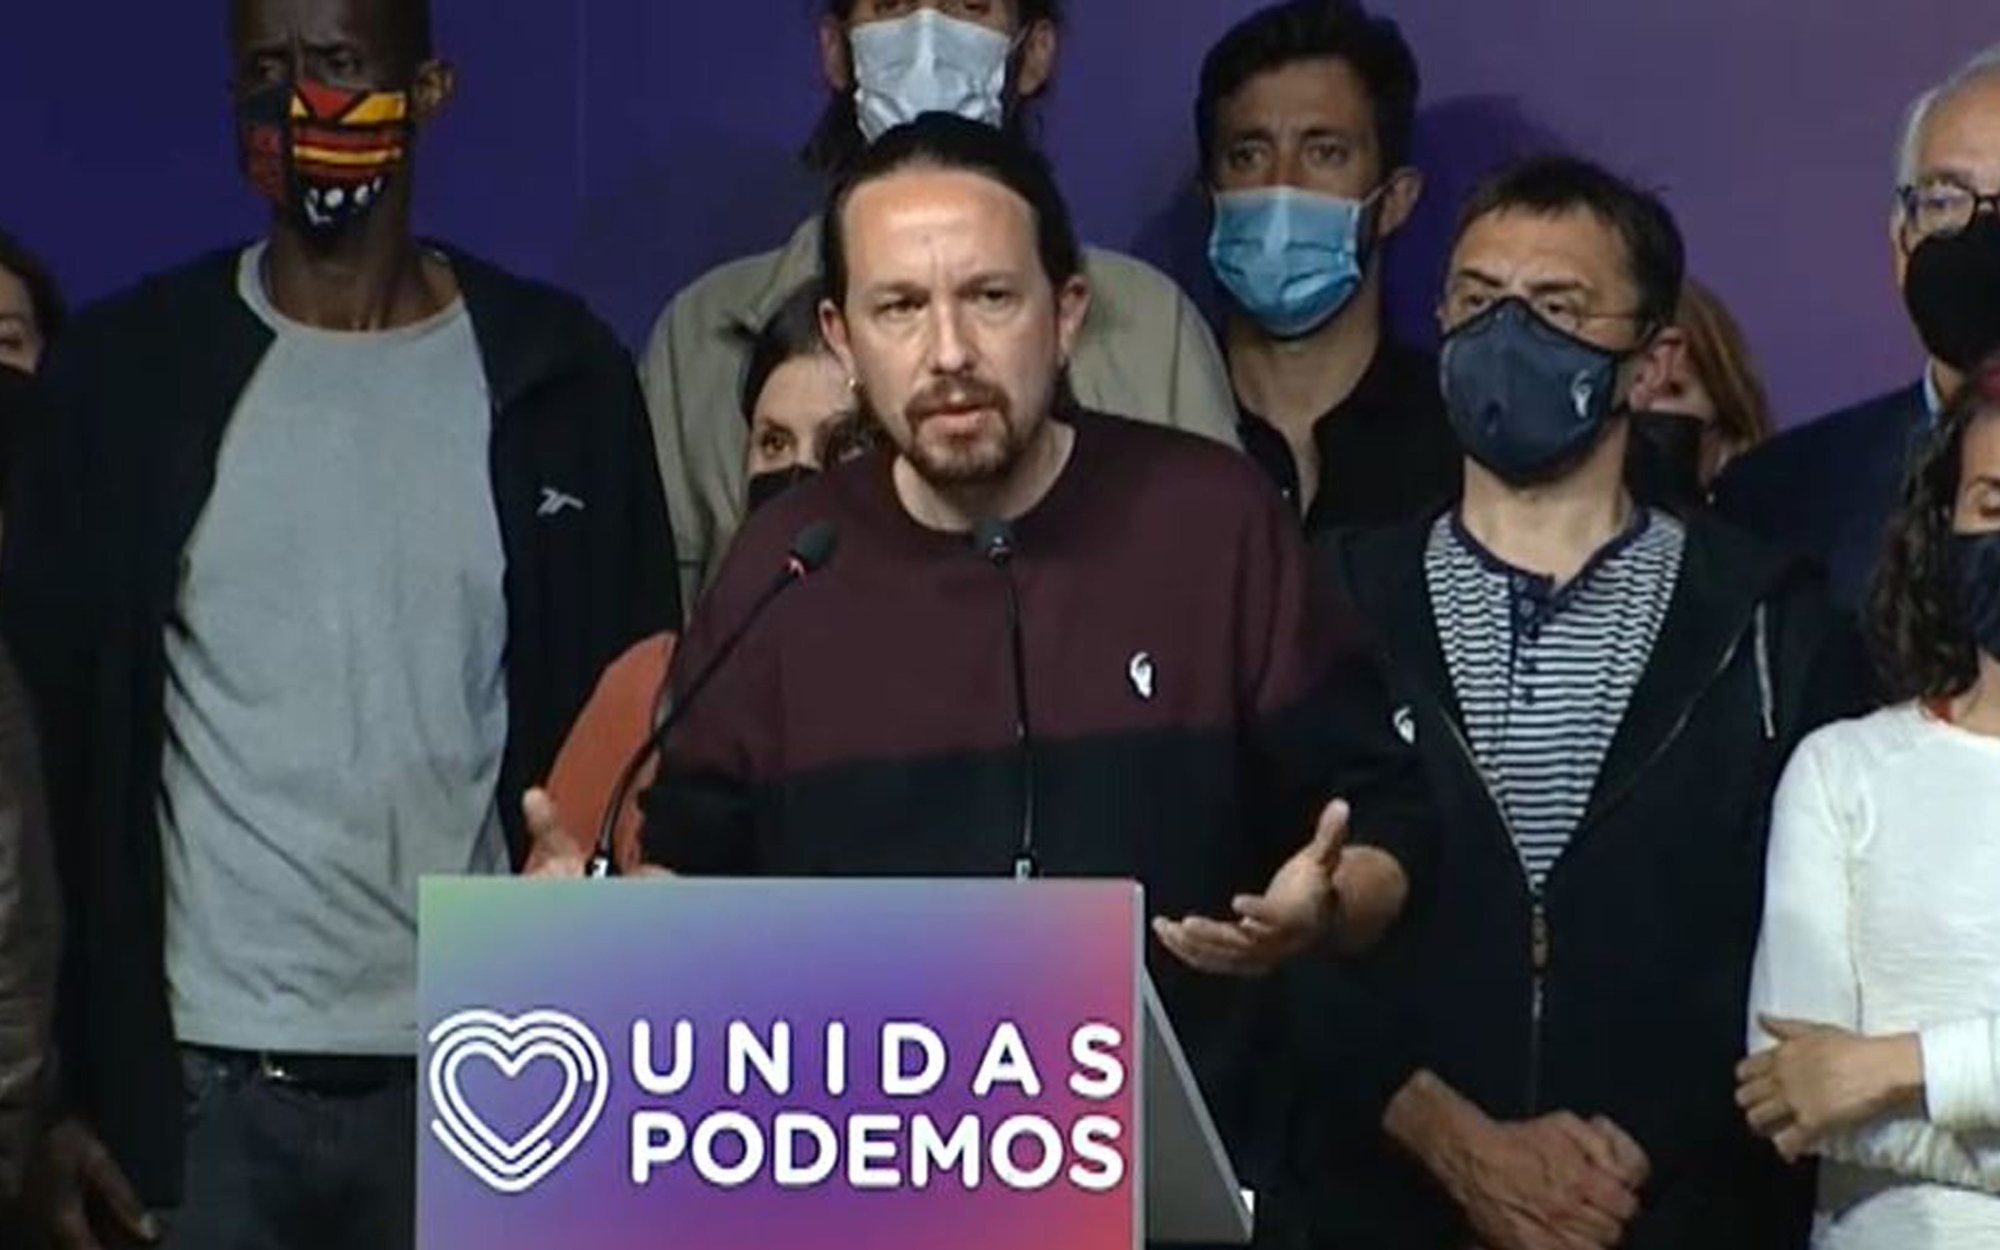 Pablo Iglesias dimite de sus cargos tras las elecciones de Madrid: "No voy a ser un tapón para la renovación"